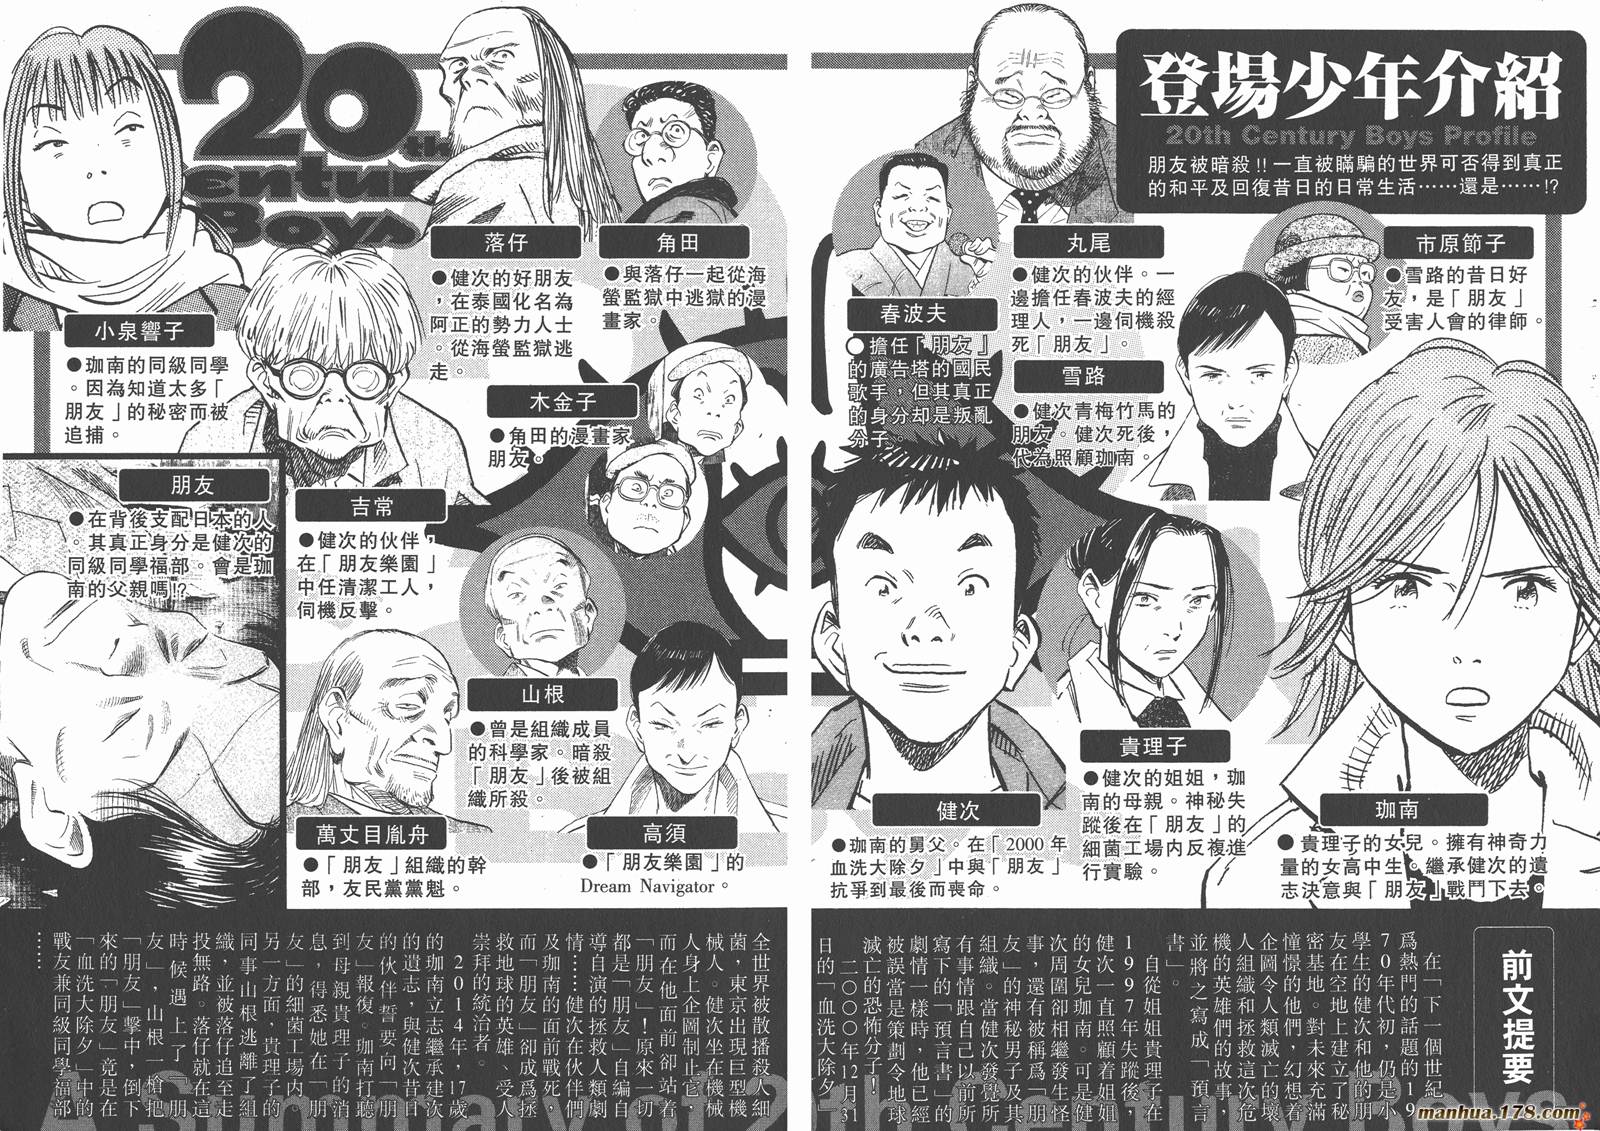 20世紀少年【第13卷】 漫畫線上看- 動漫戲說(ACGN.cc)